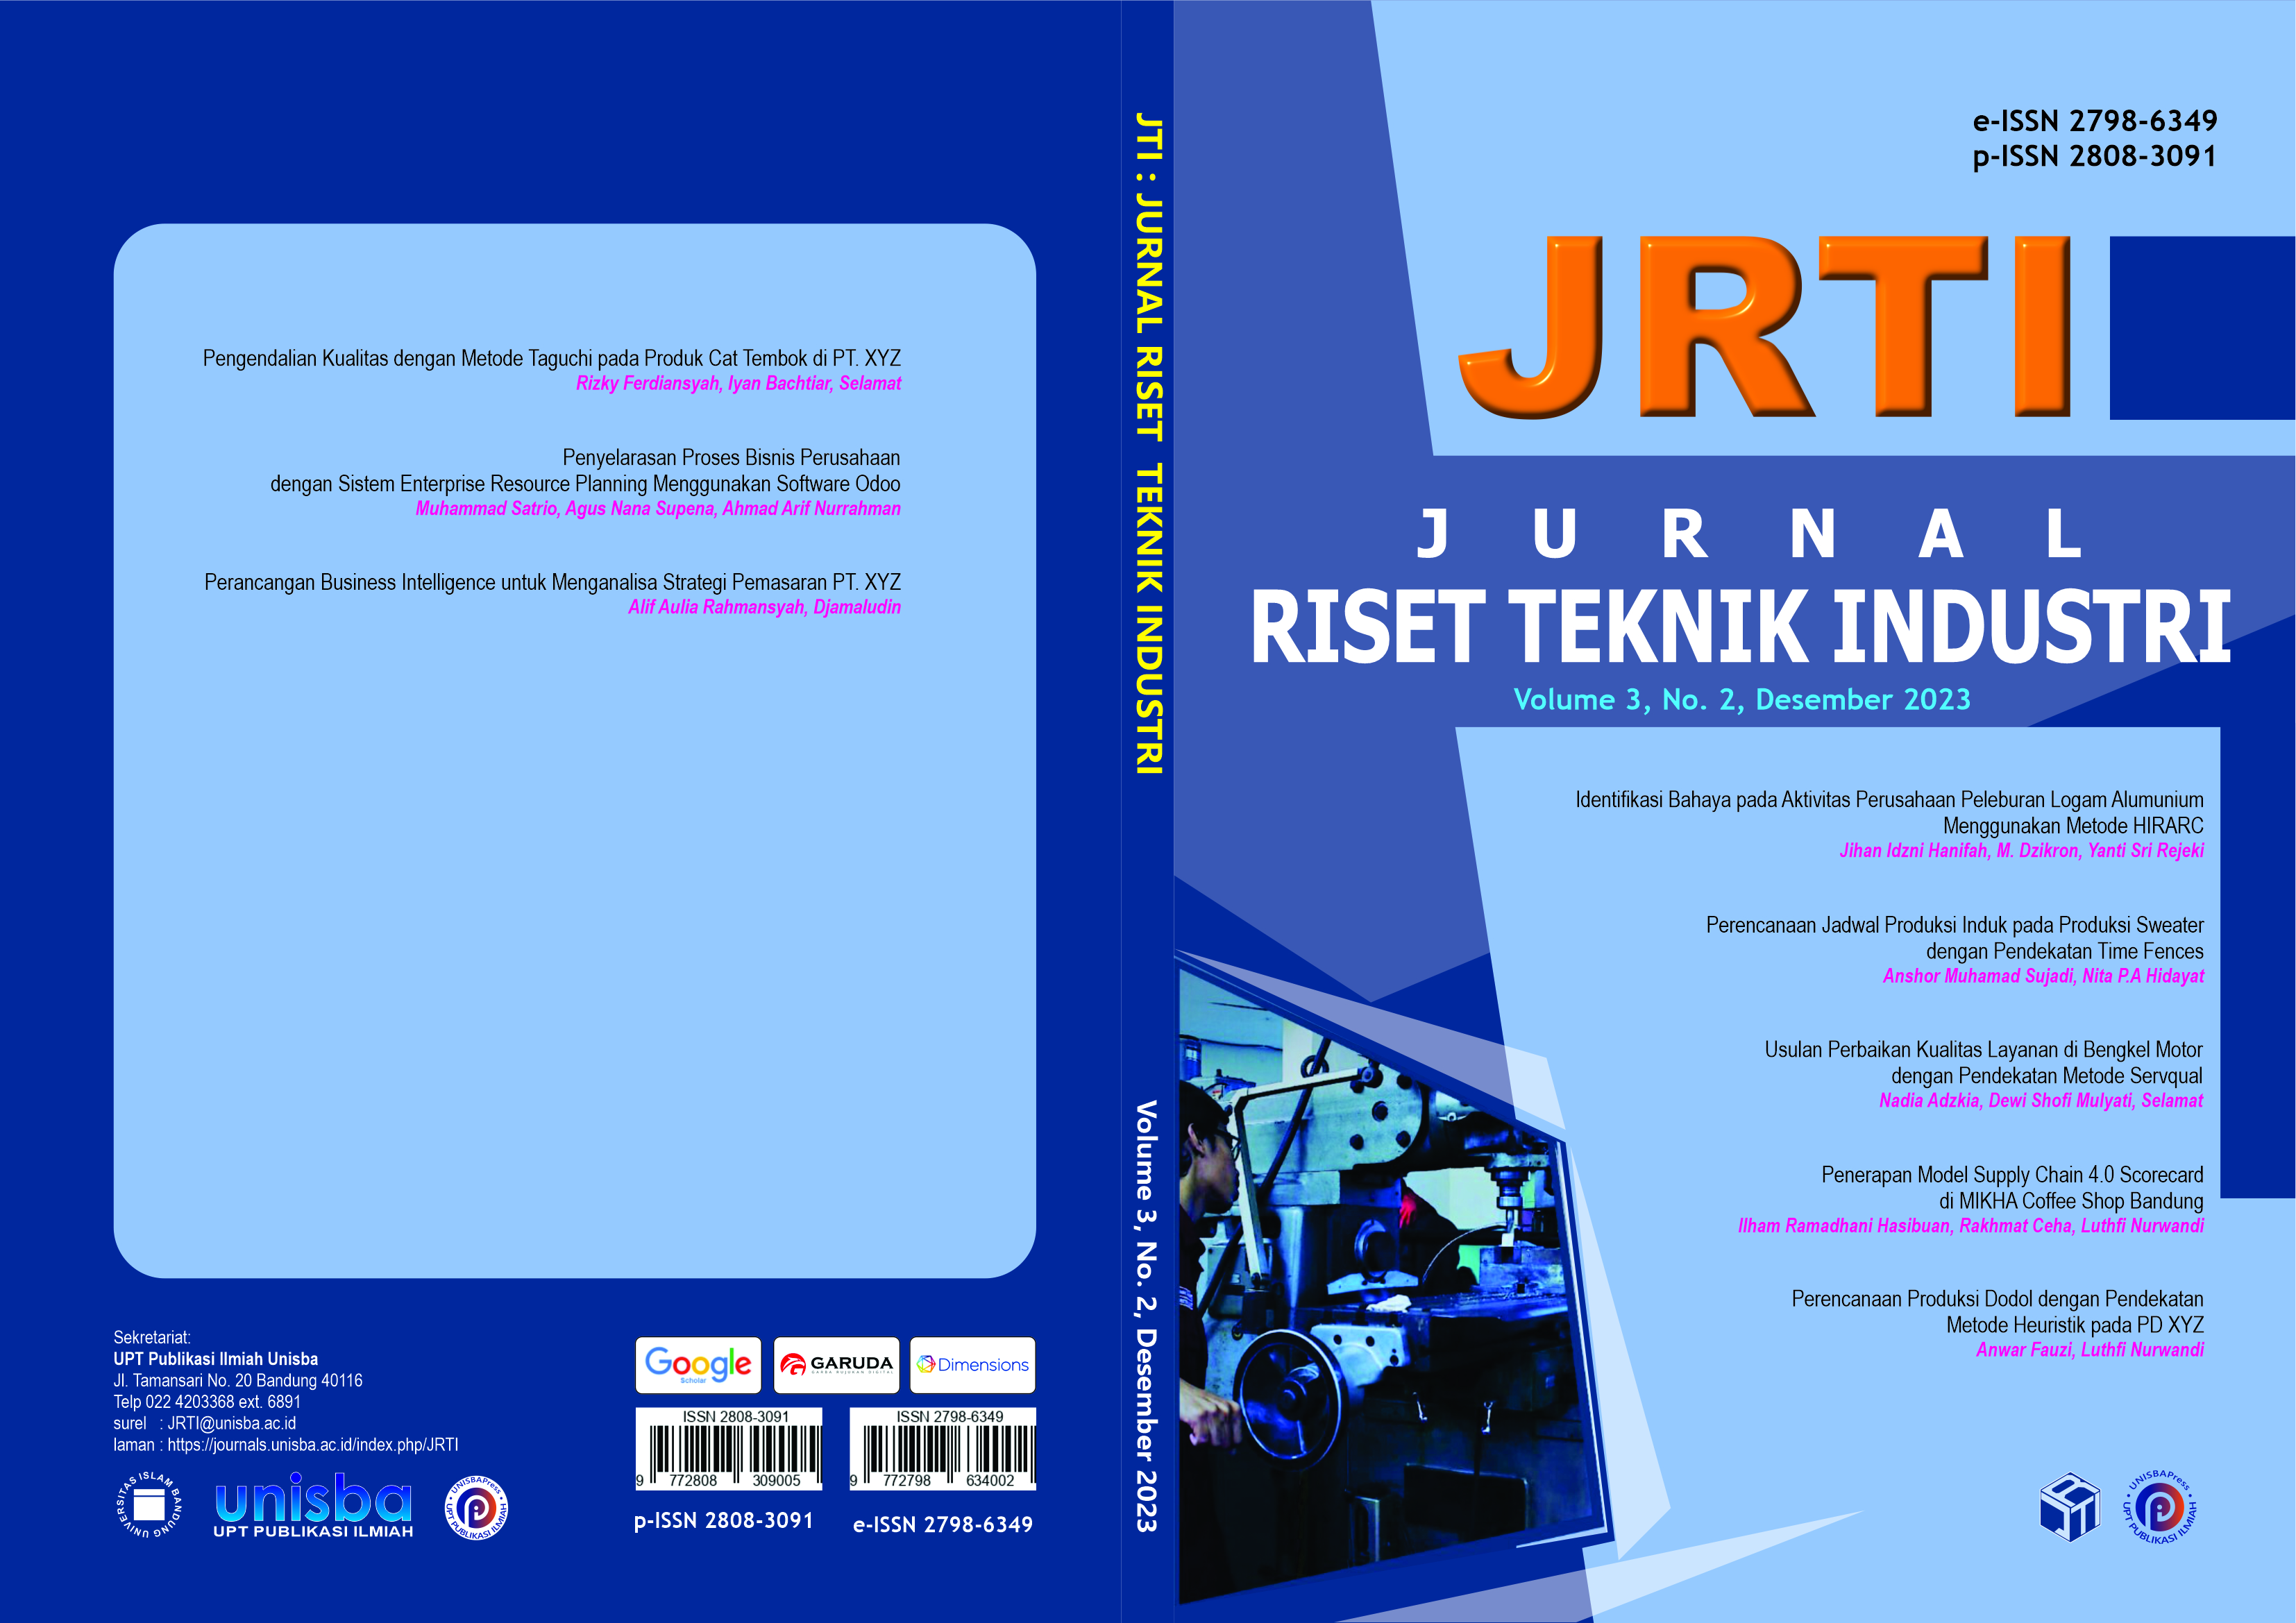 					View Volume 3, No. 2, Desember 2023, Jurnal Riset Teknik Industri (JRTI)
				